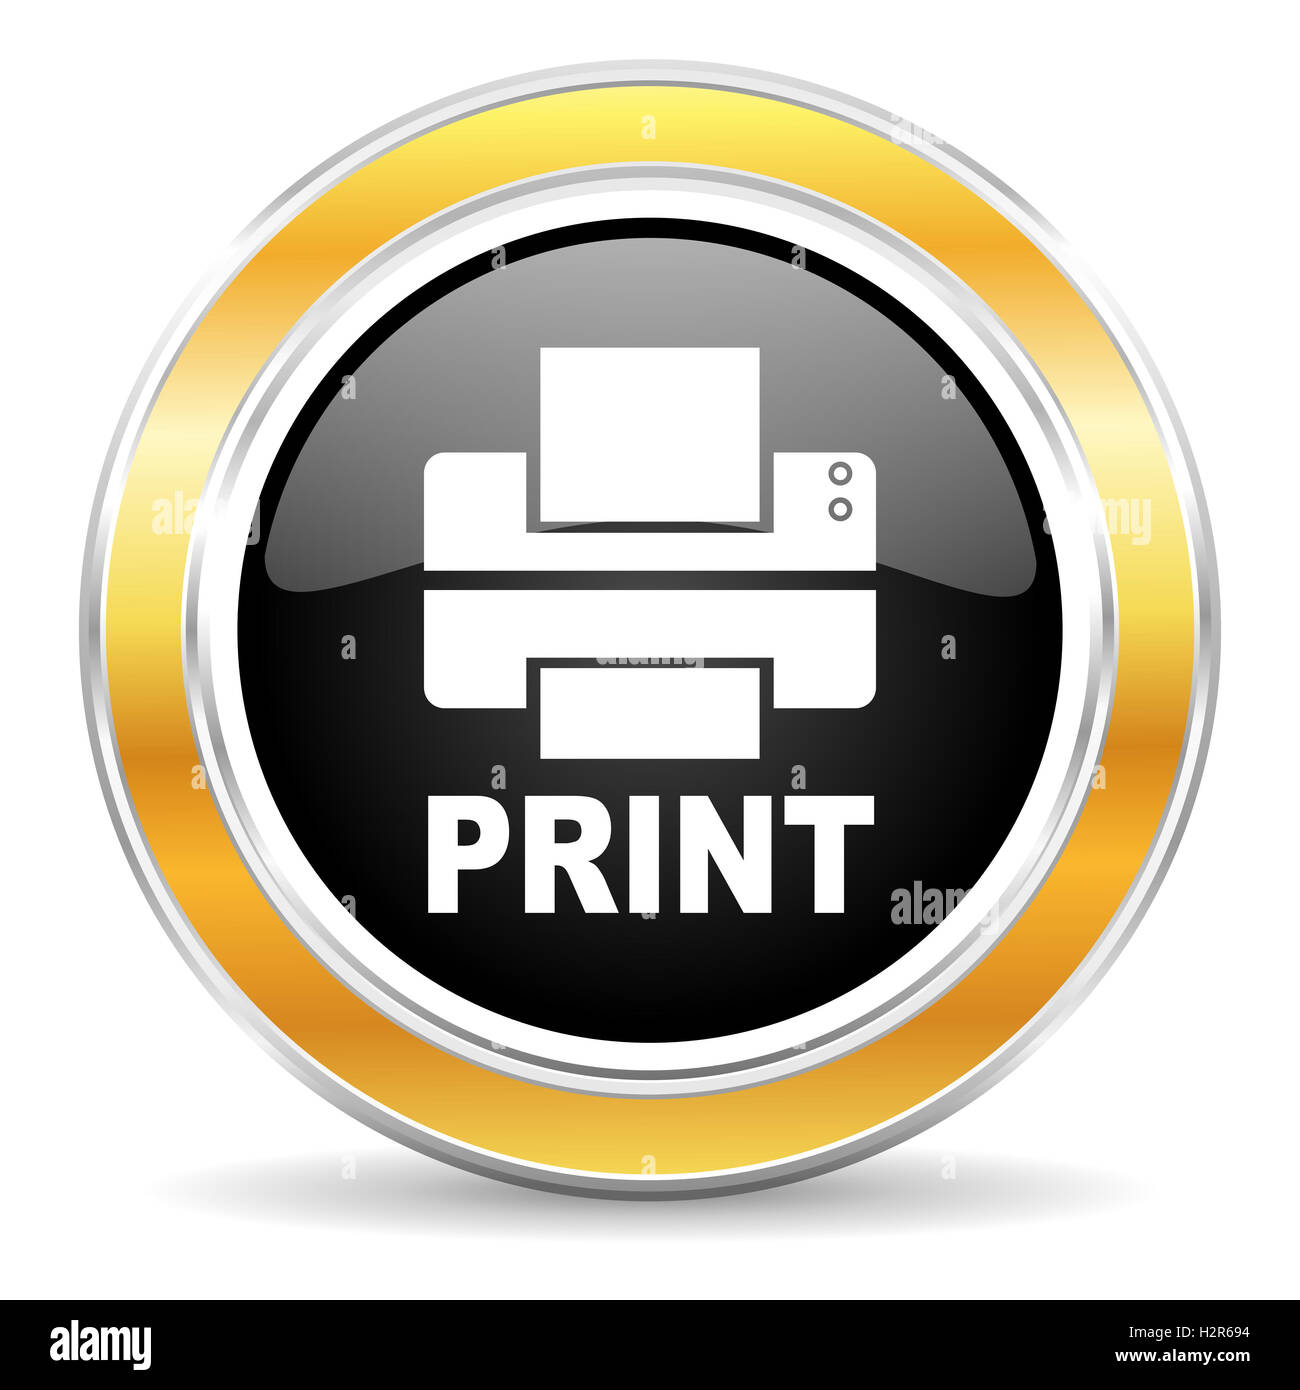 printer icon Stock Photo